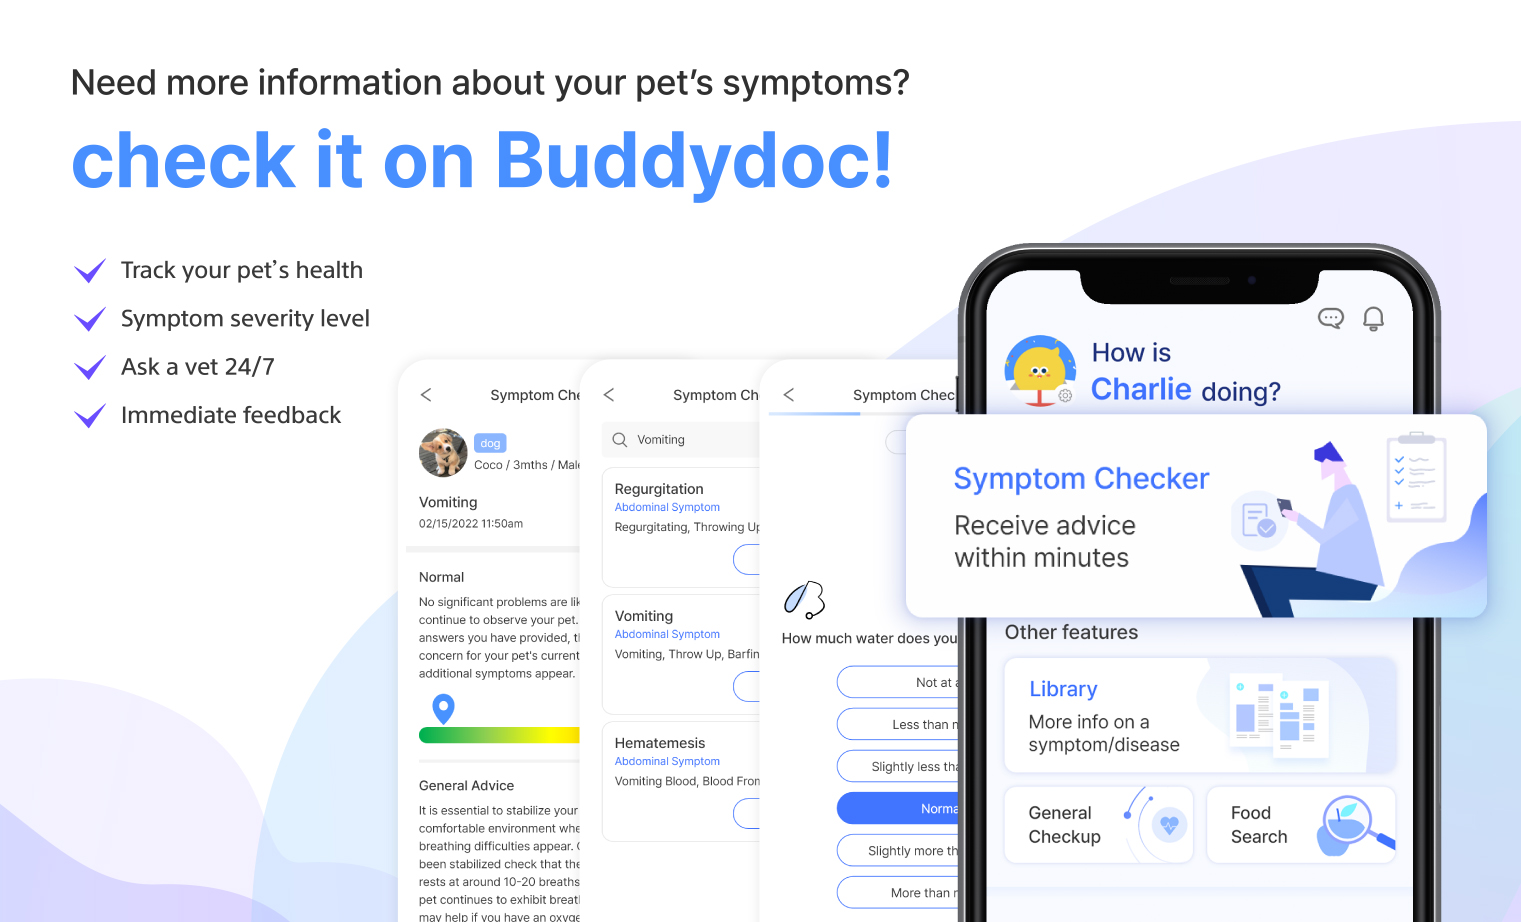 Buddydoc symptom checker information